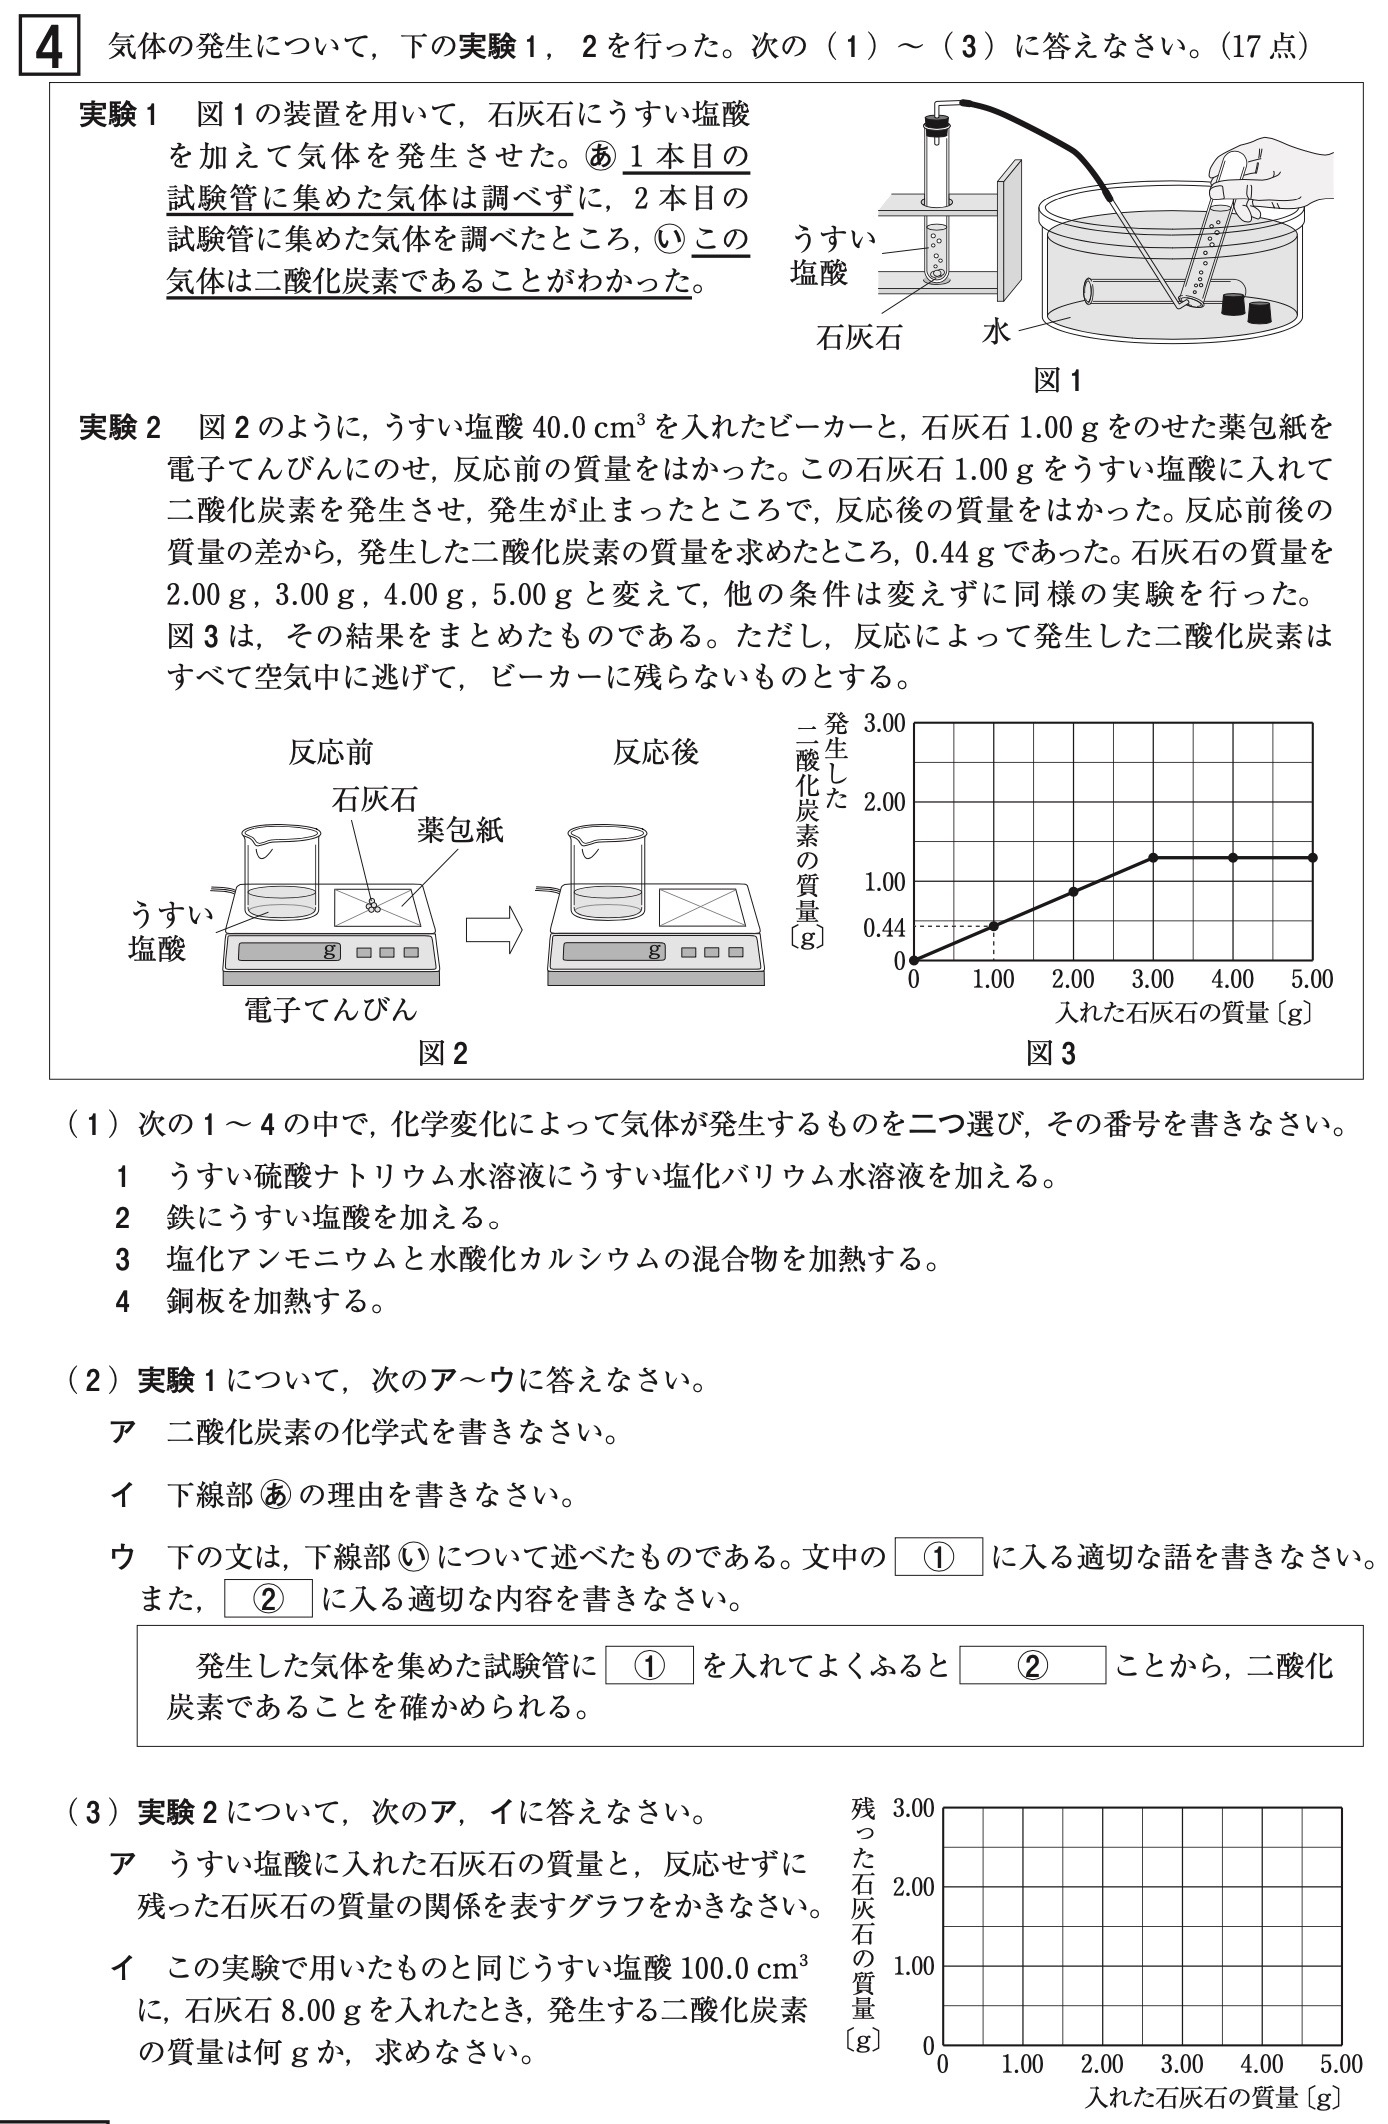 青森県公立高校入試理科2022年(令和4年)過去問題